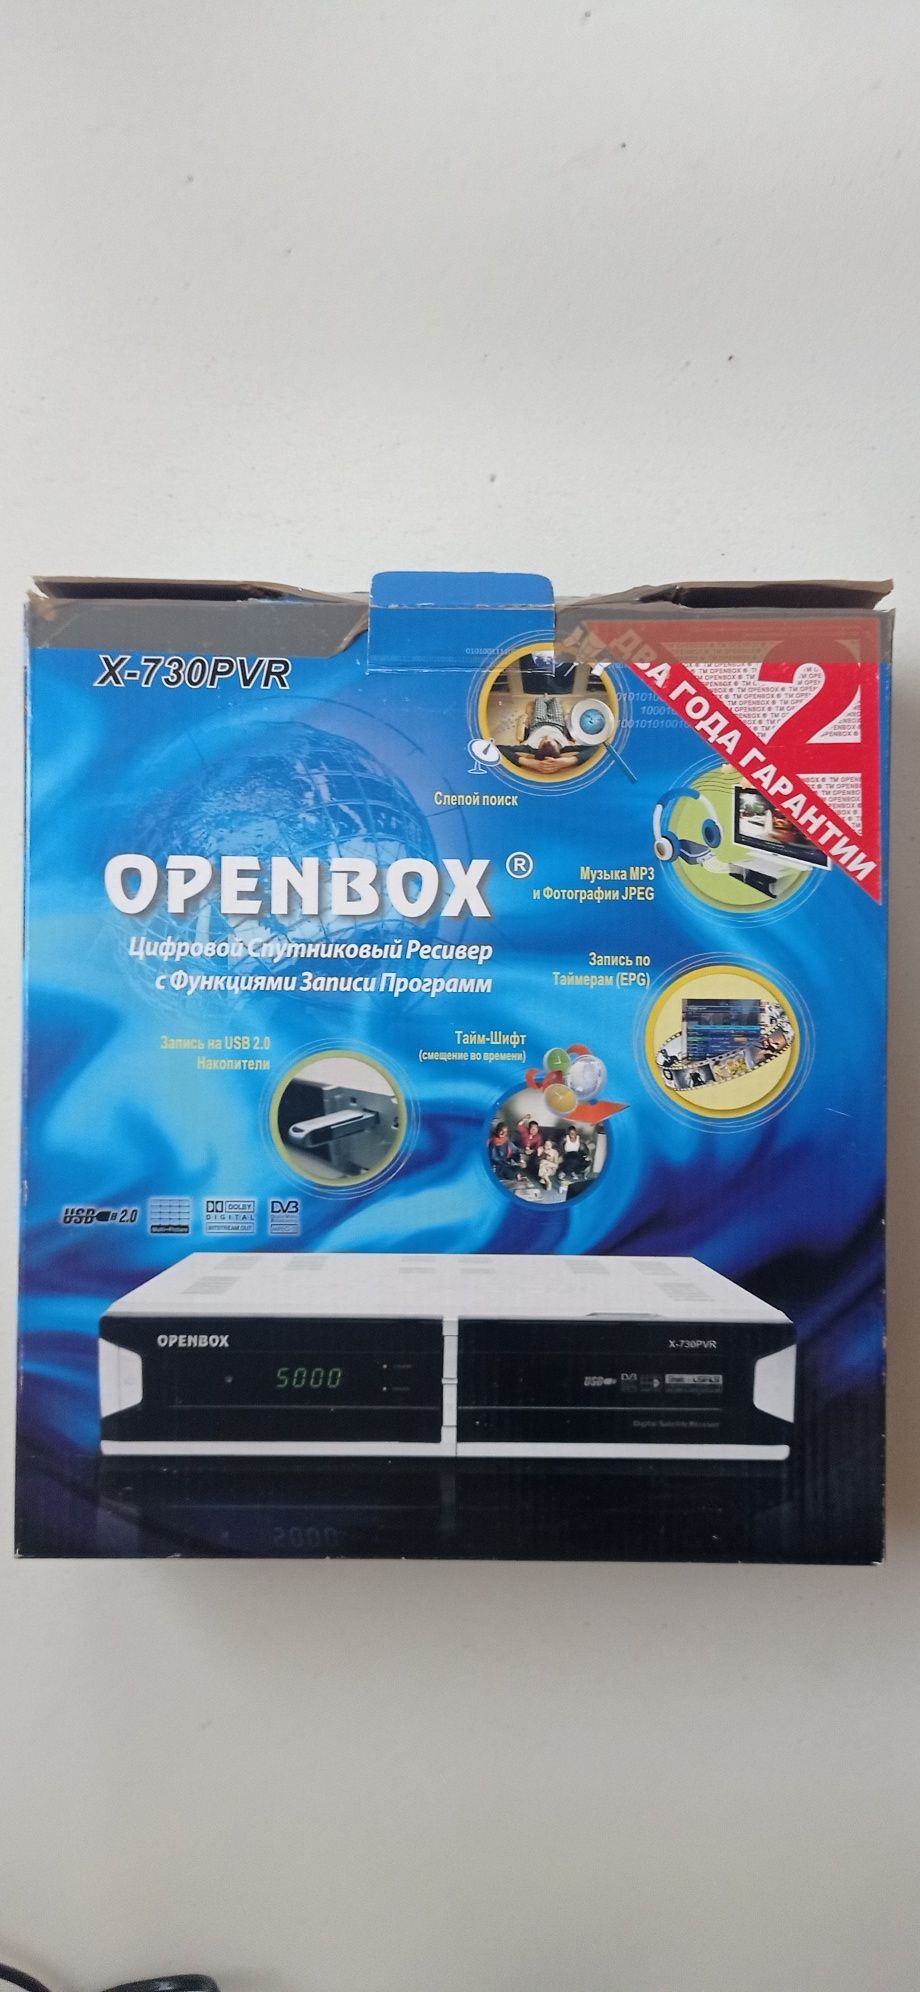 Спутниковый ресивер Openbox X-730 PVR